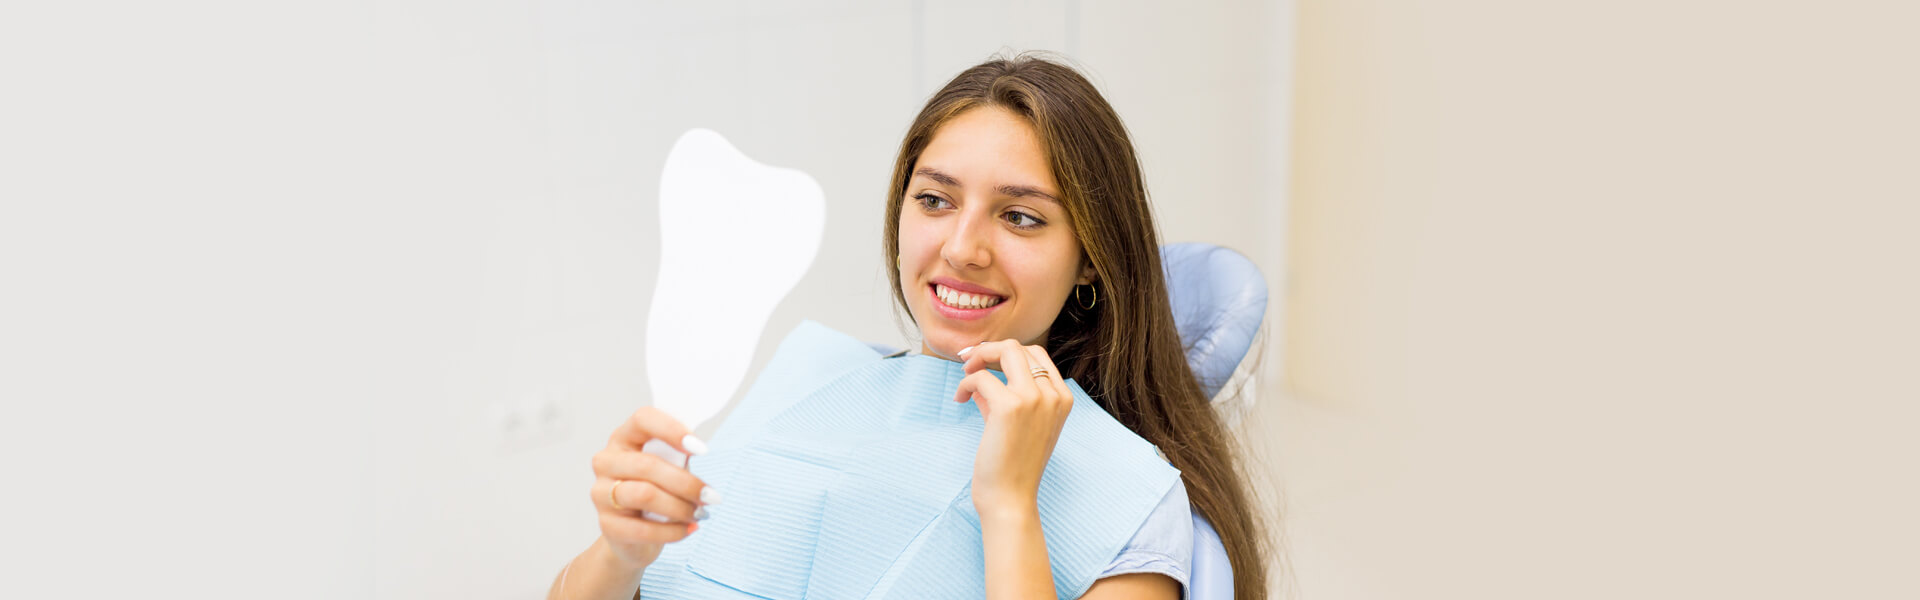 How Long Do Dental Fillers Last?